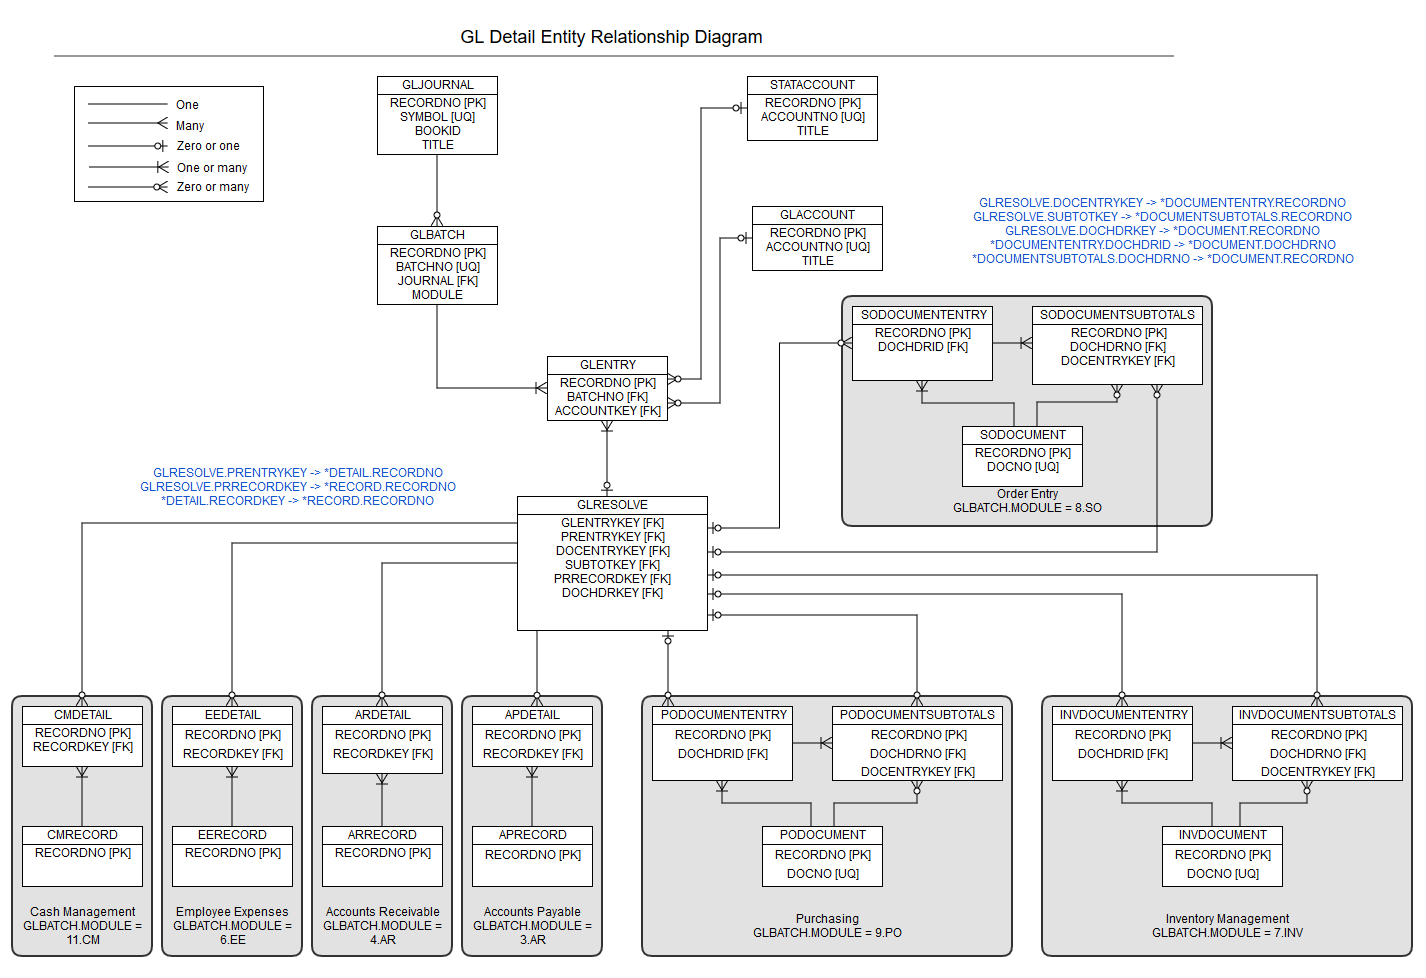 entity relationship diagram for general ledger details